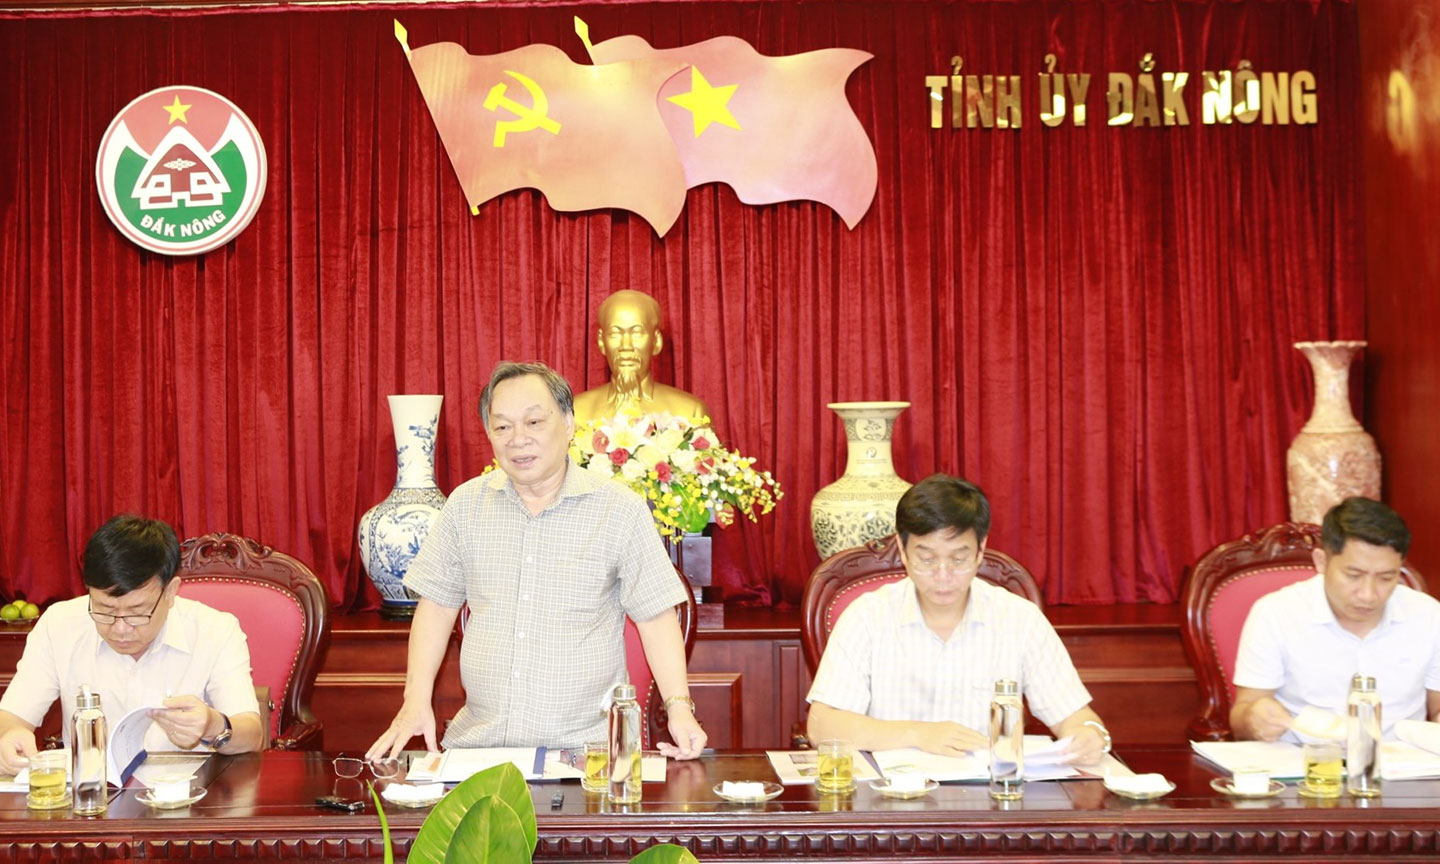 Ông Lê Diễn - Bí thư Tỉnh ủy, Chủ tịch HĐND tỉnh Đăk Nông hoan nghênh Tập đoàn Sao Mai đầu tư dự án năng lượng mặt trời vào tỉnh Đăk Nông.